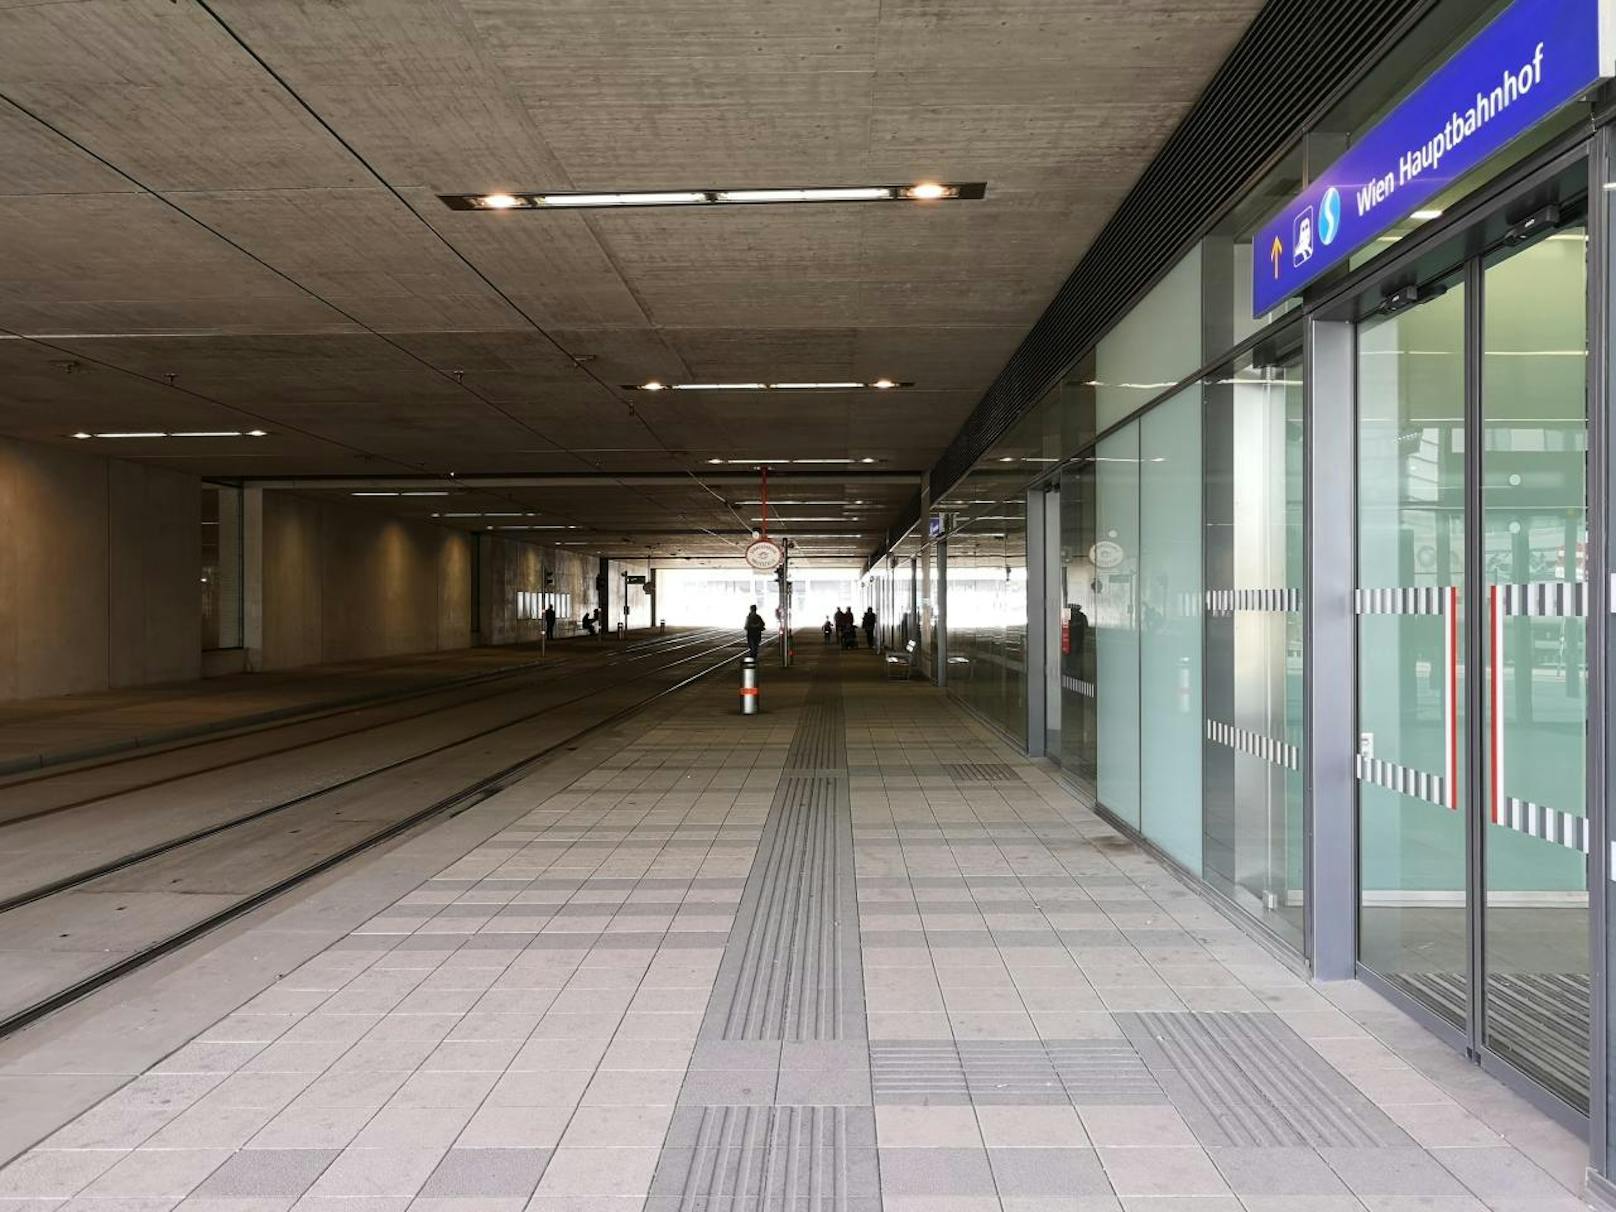 Erschweren wir die Bedingungen: In diesem Tunnel am Hauptbahnhof sind die Lichtverhältnisse schwierig. Man beachte den Ausgang am anderen Ende des Tunnels.